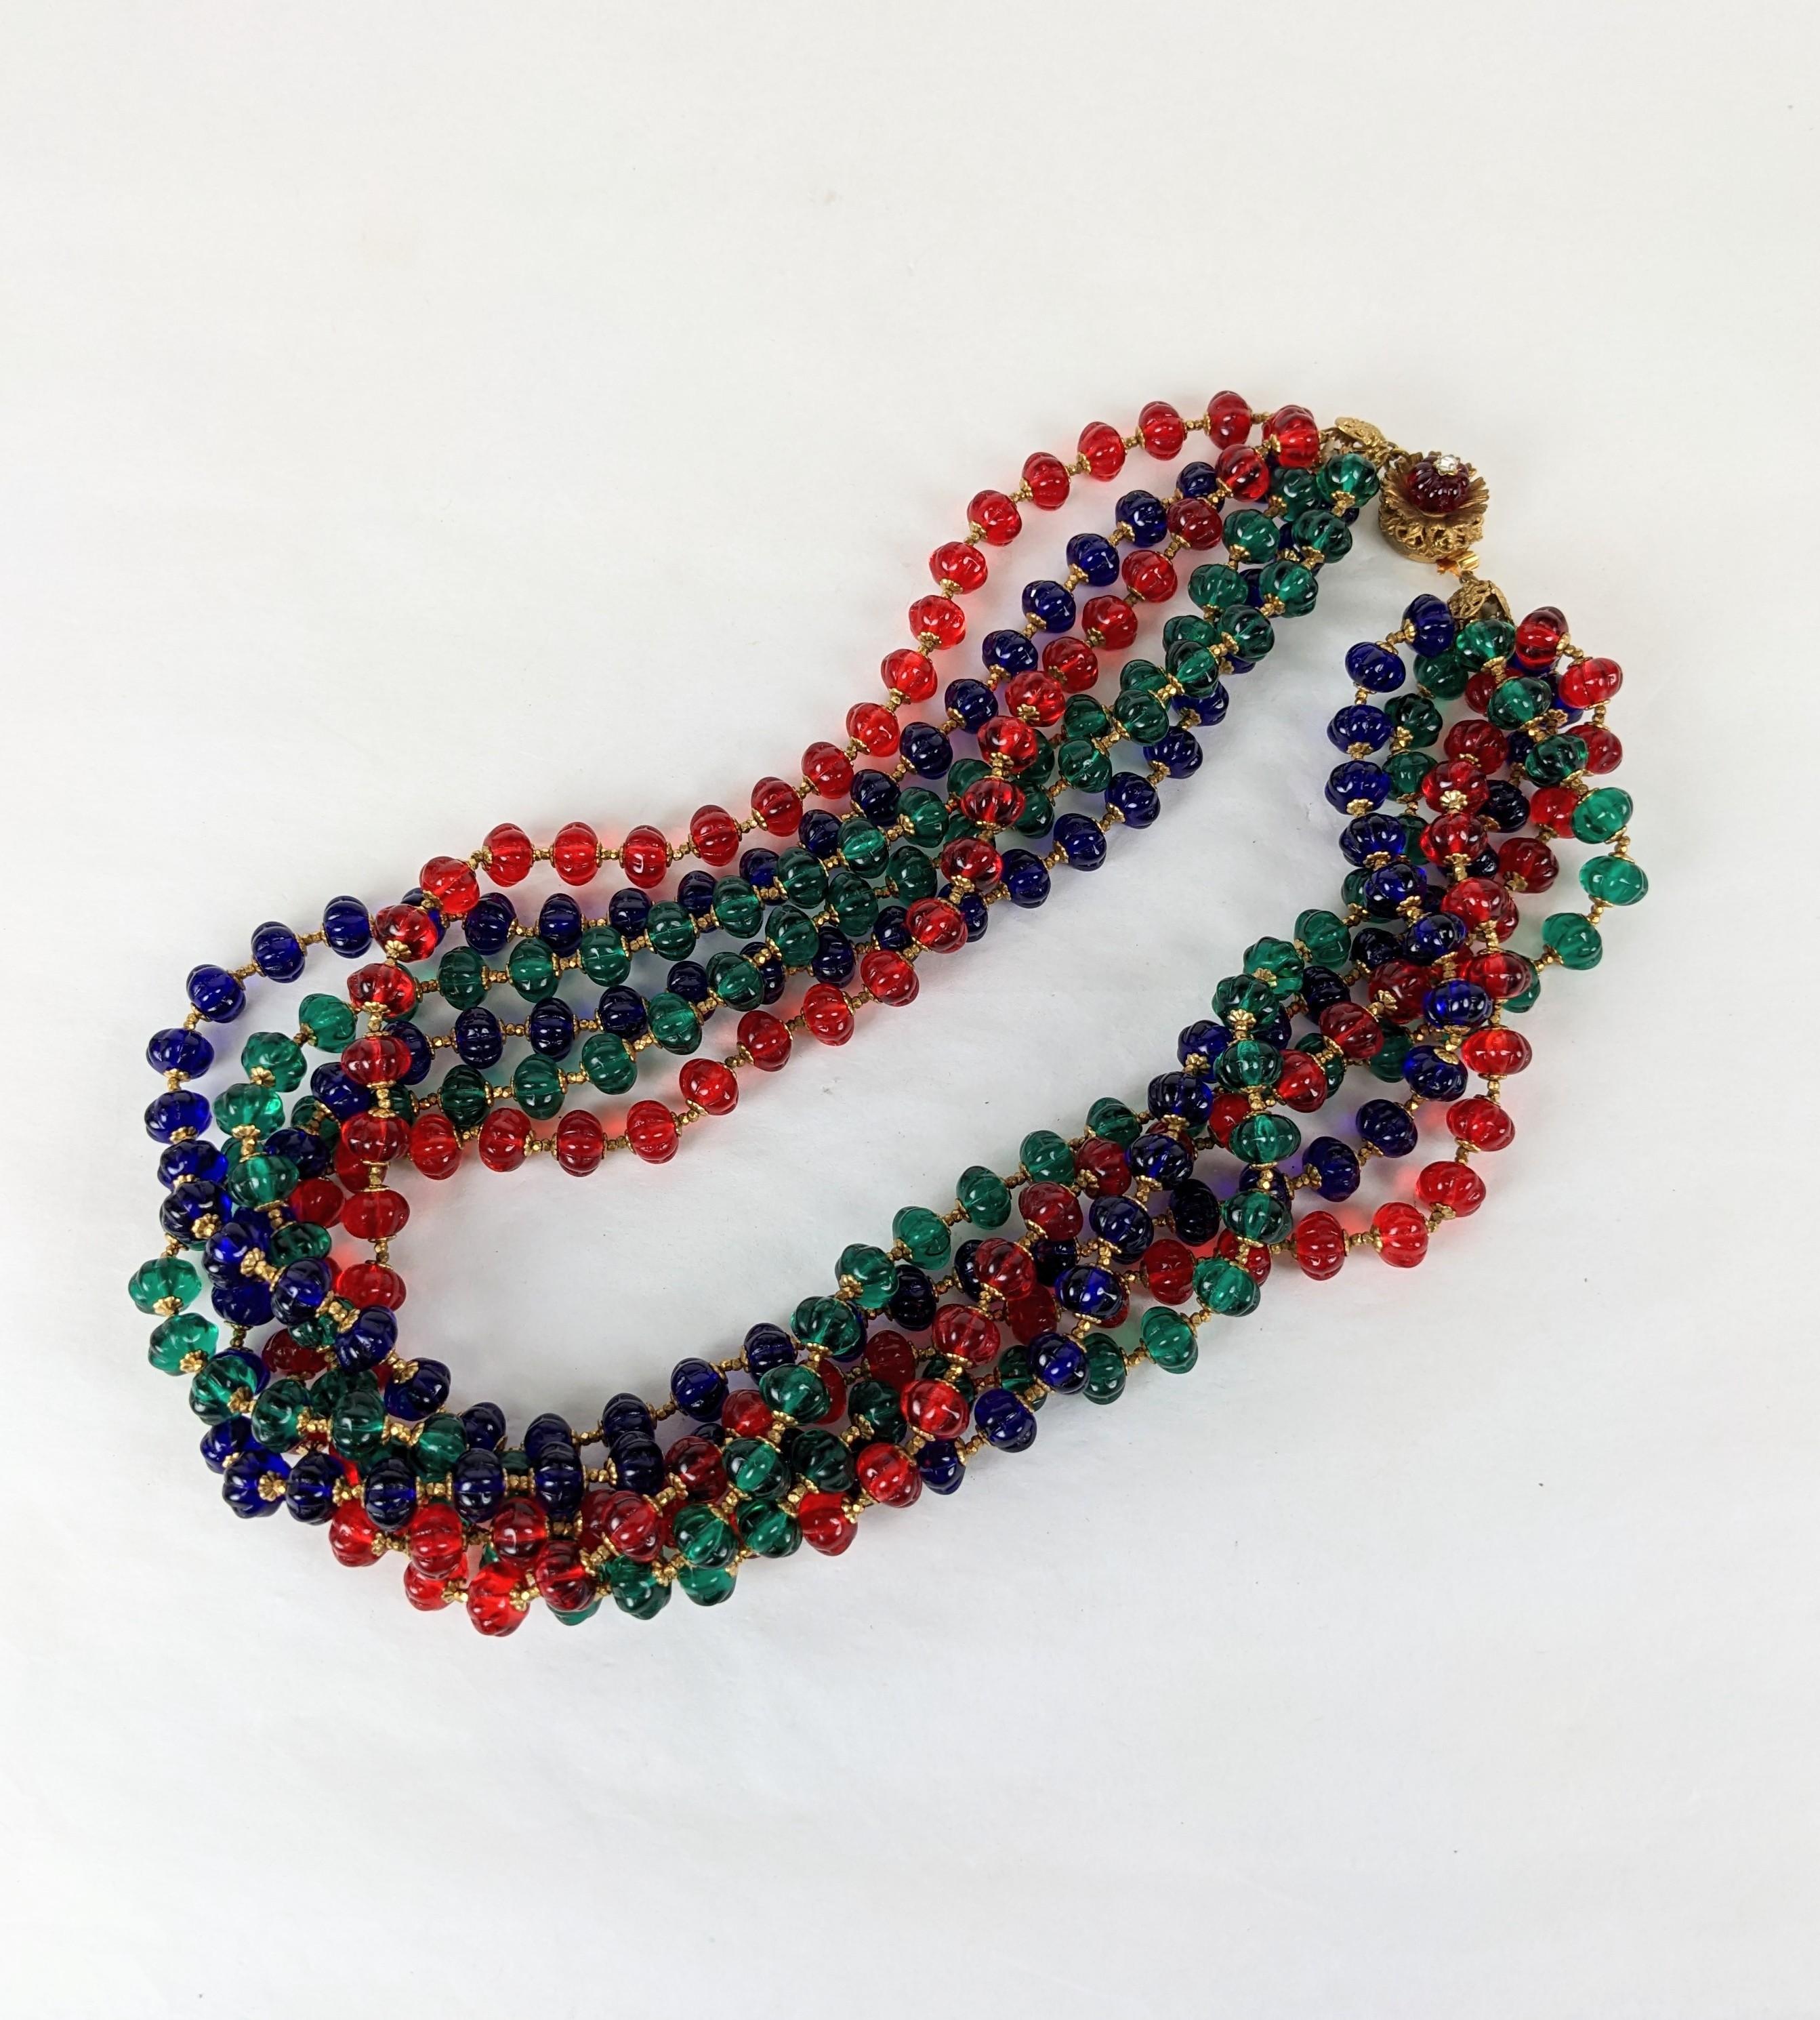 Exceptionnelle Torsade de perles multiples en verre Gripoix Haskell Melon Cut des années 1950. Des perles de Gripoix de couleur rubis, émeraude et saphir sont utilisées pour une torsade de 6 brins avec un fermoir en perles de rubis. Des centaines